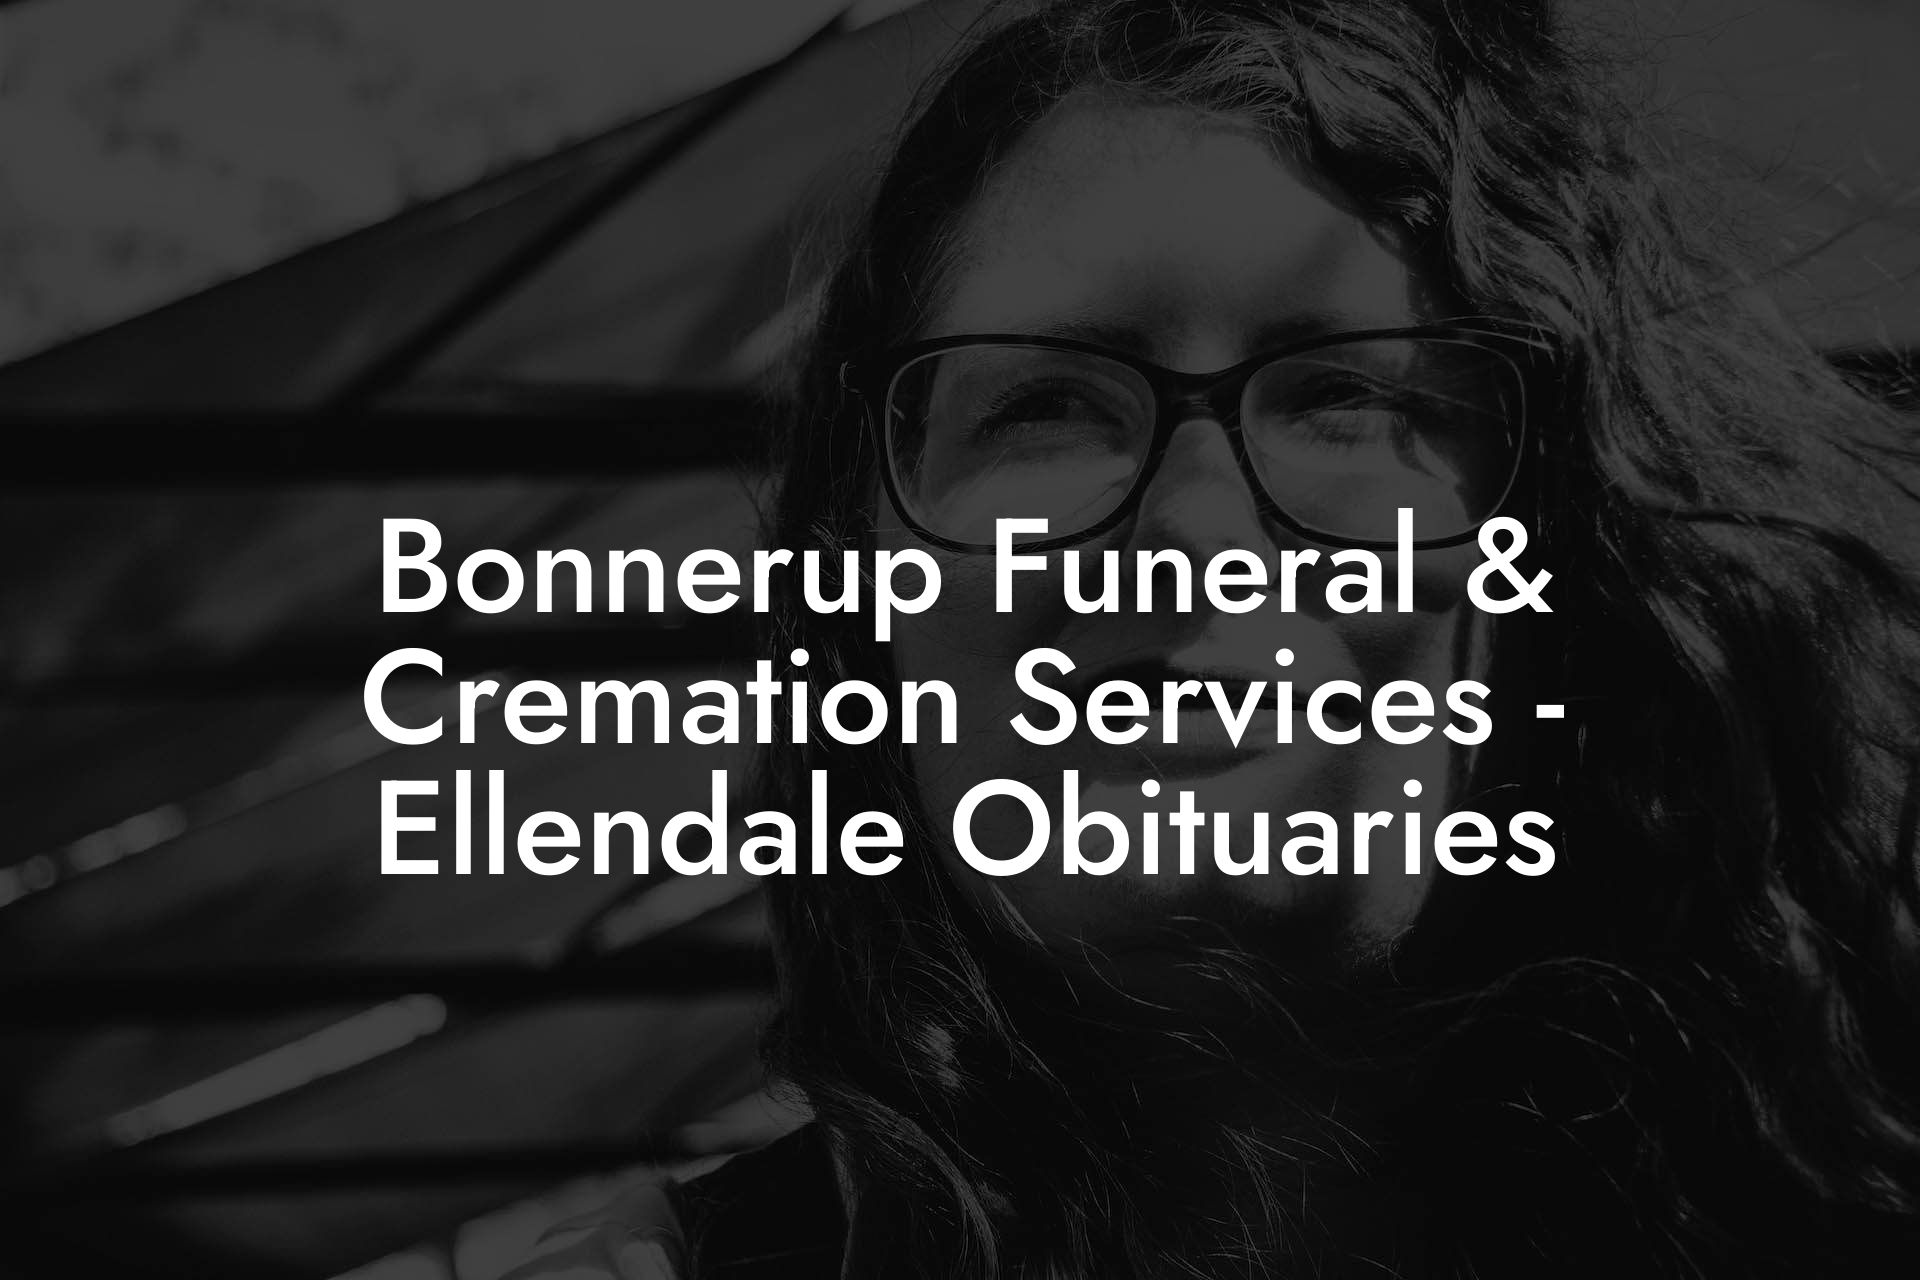 Bonnerup Funeral & Cremation Services - Ellendale Obituaries